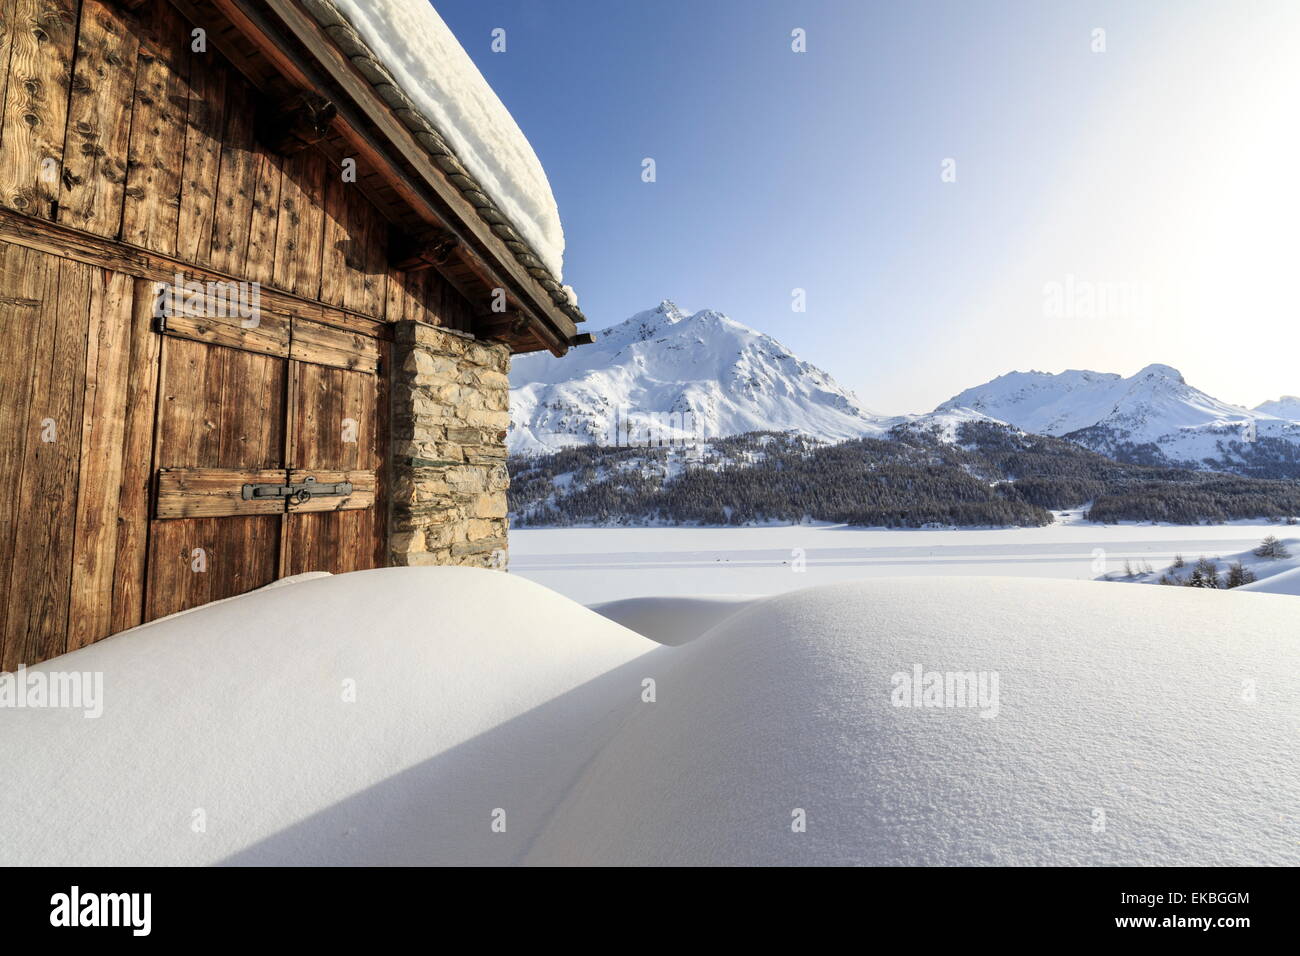 Il sole che illumina una tipica capanna ricoperta di neve presso il Passo del Maloja, Grigioni, alpi svizzere, Svizzera Foto Stock